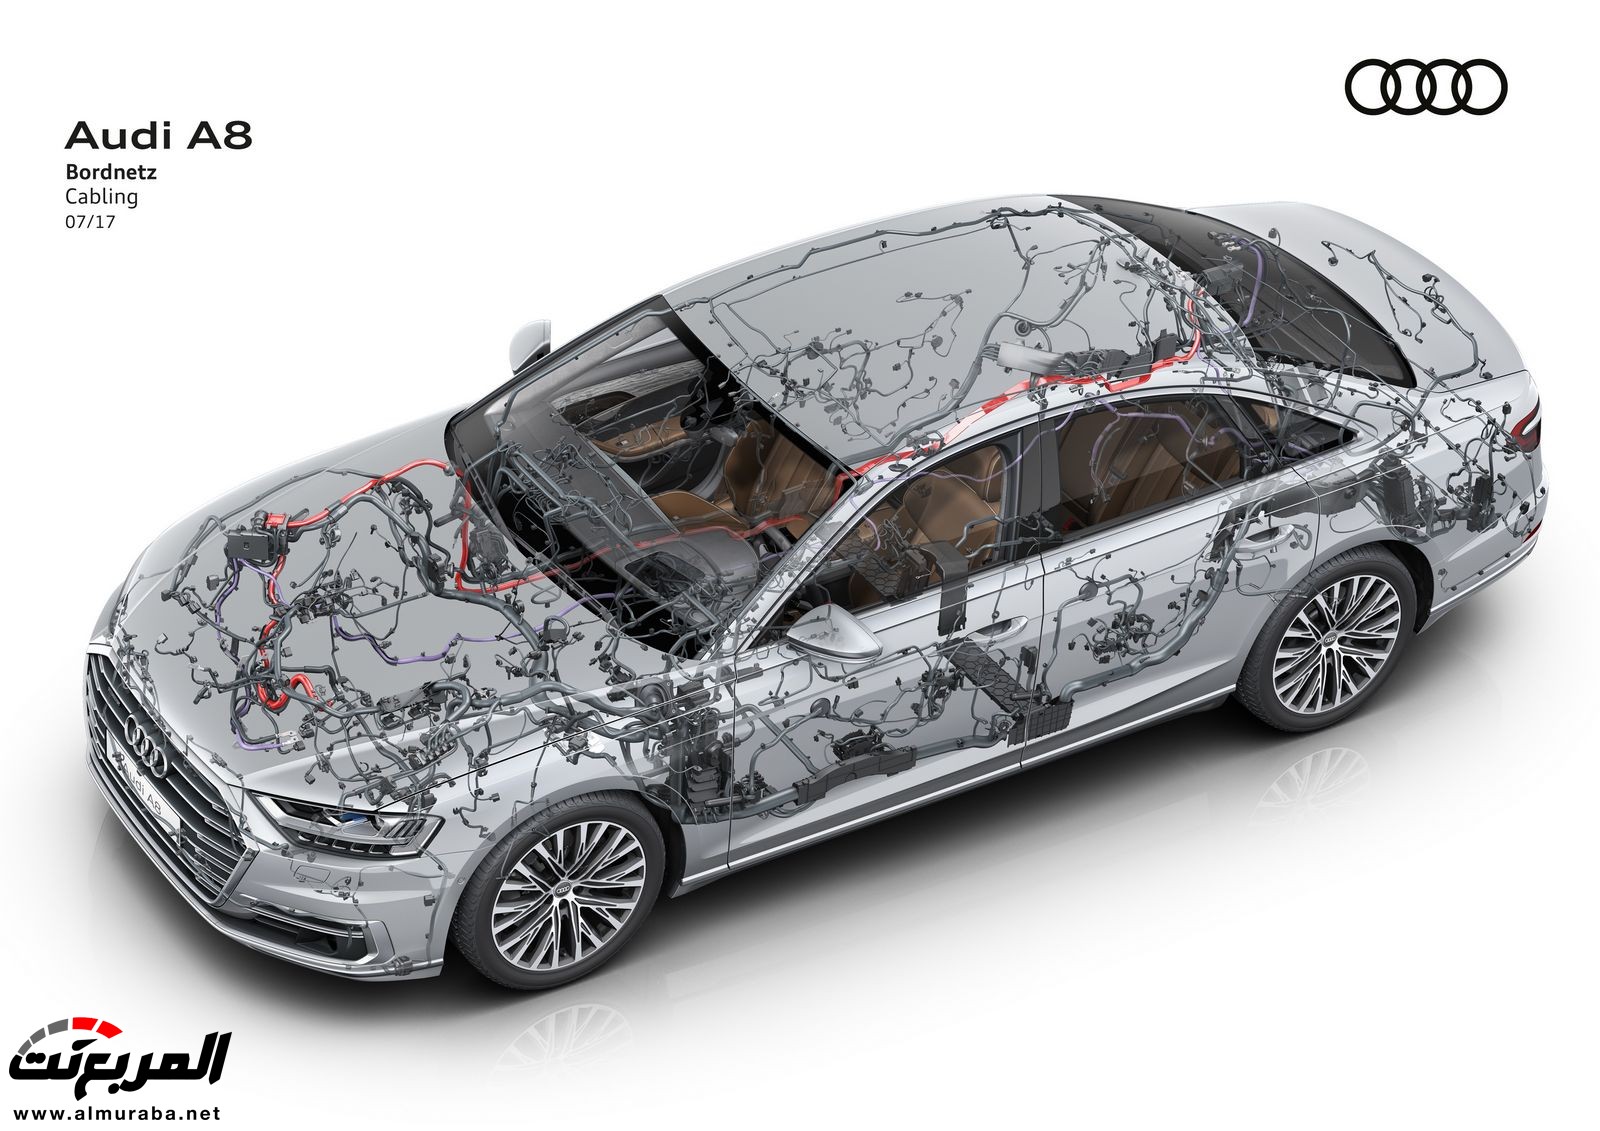 أودي A8 2018 الجديدة كلياً تكشف نفسها بتصميم وتقنيات متطورة "معلومات + 100 صورة" Audi A8 97